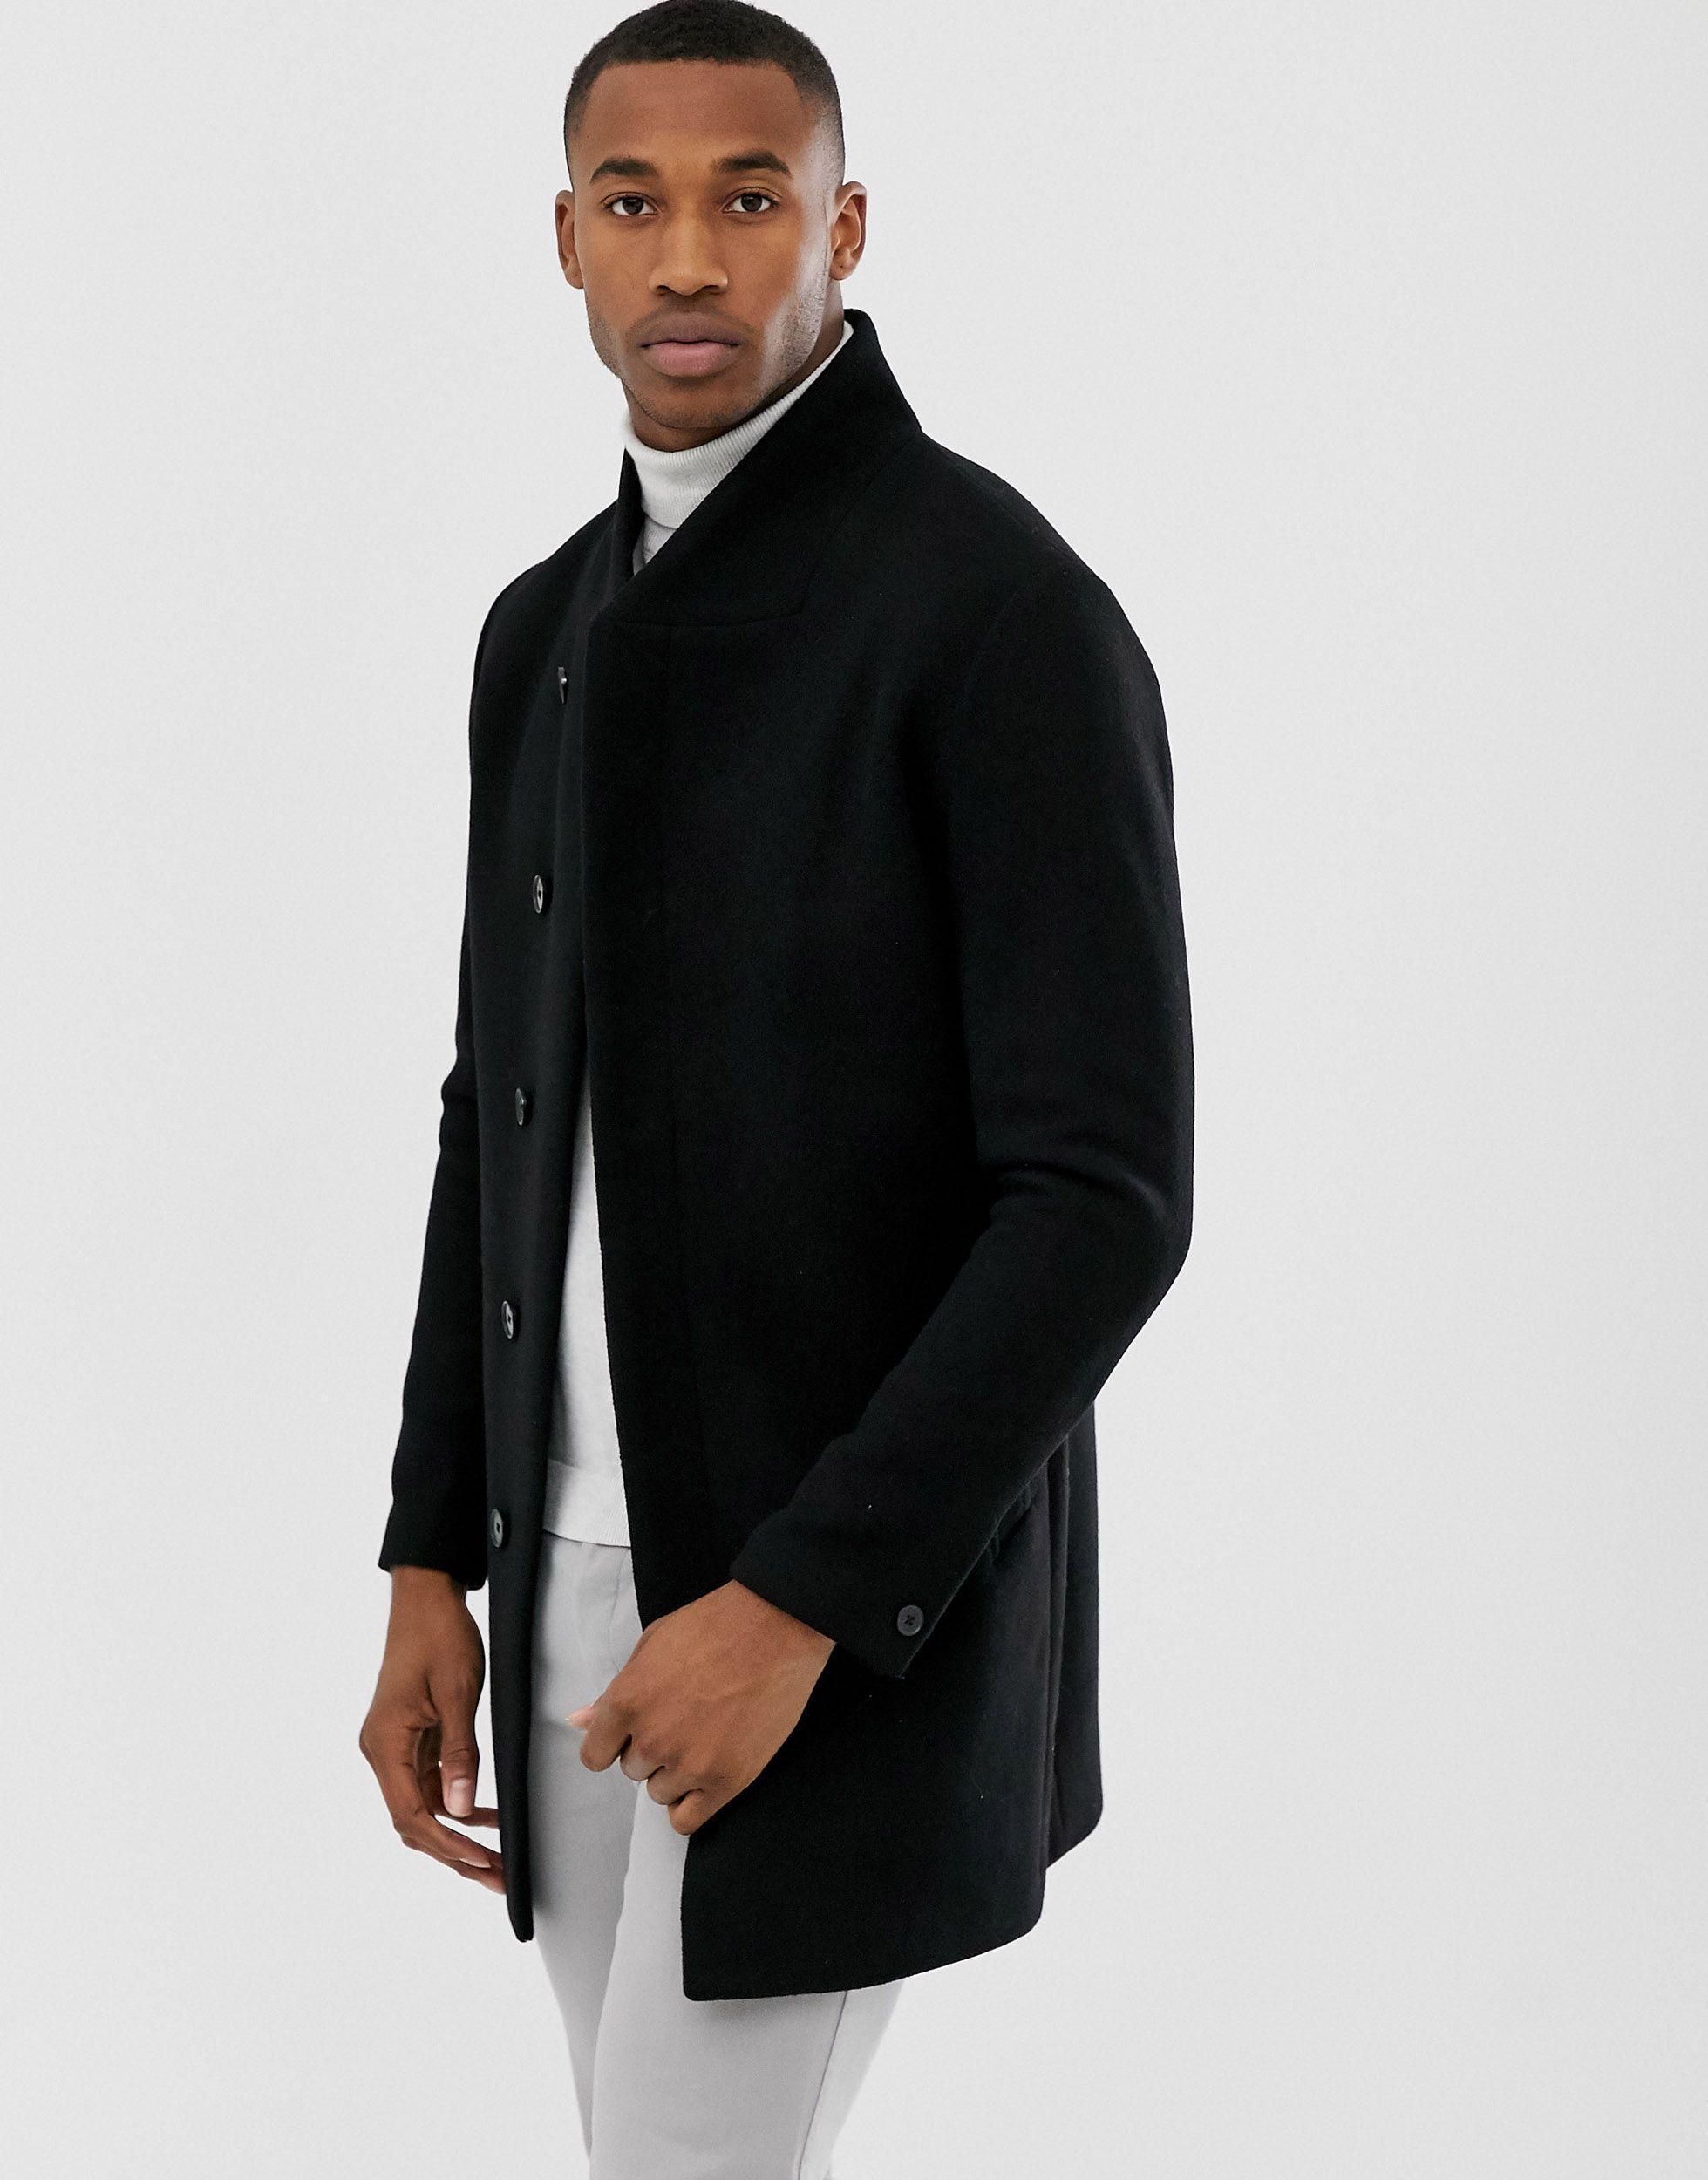 Jack & Jones Premium Wool Stand Up Collar Coat in Black for Men - Lyst